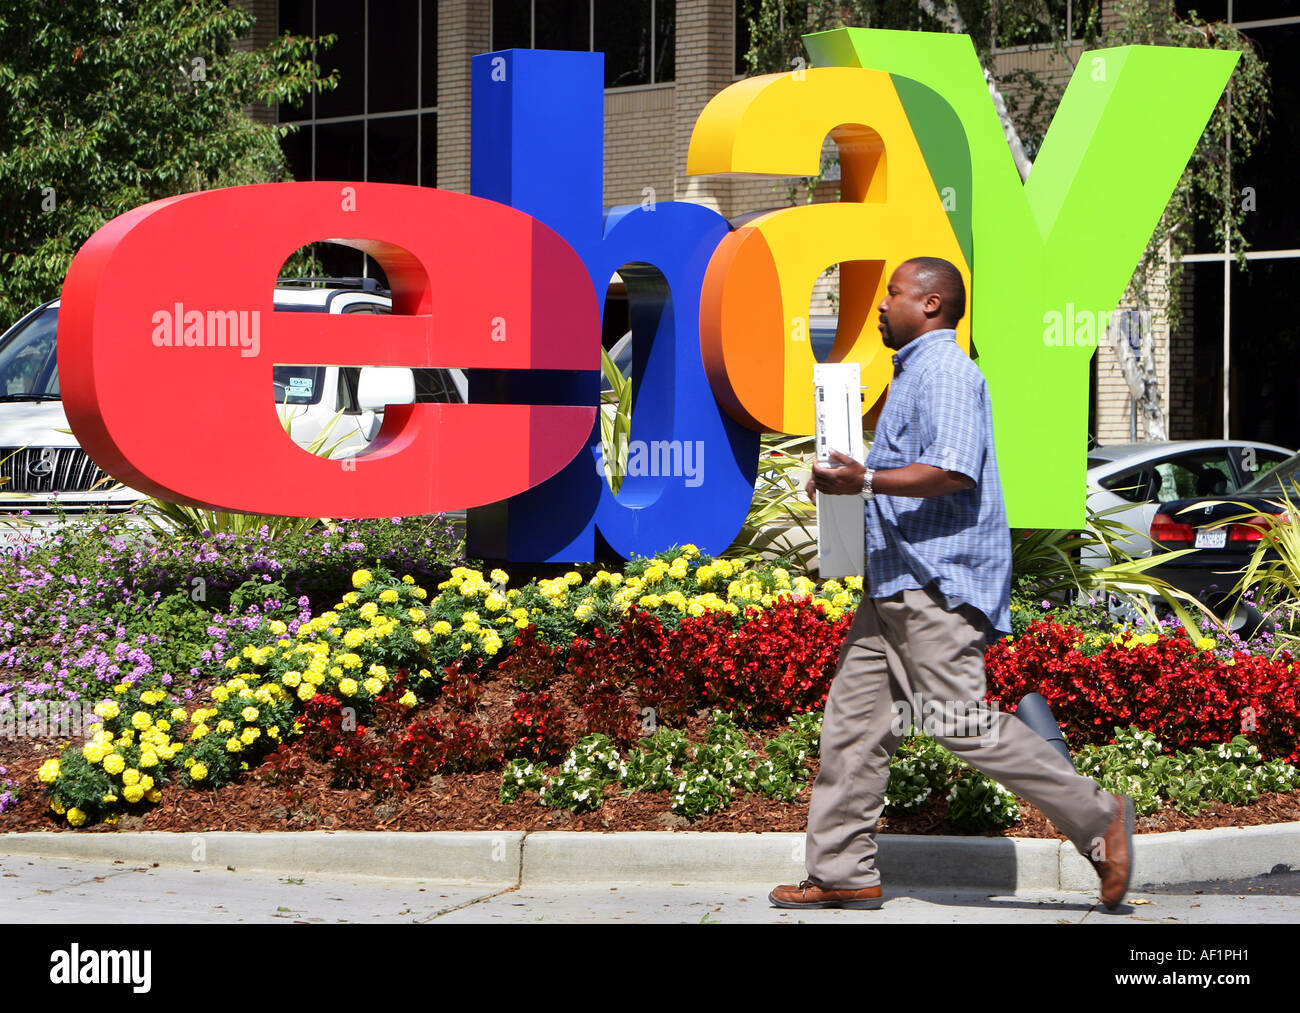 Siège d'ebay à San Jose en Californie. L'employé est un ordinateur devant le logo ebay Banque D'Images